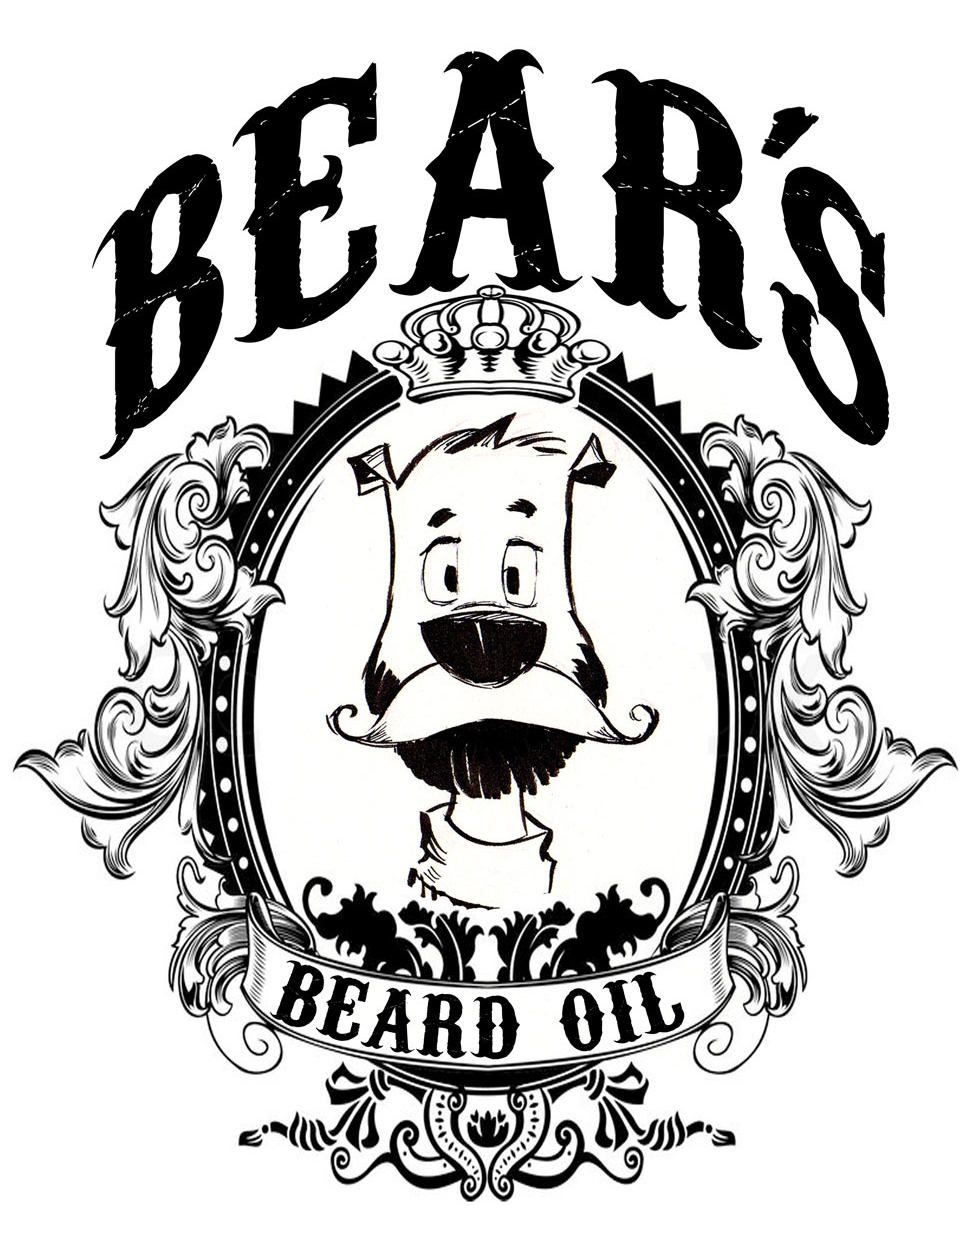 guy wolek  beard beard oil cartoon